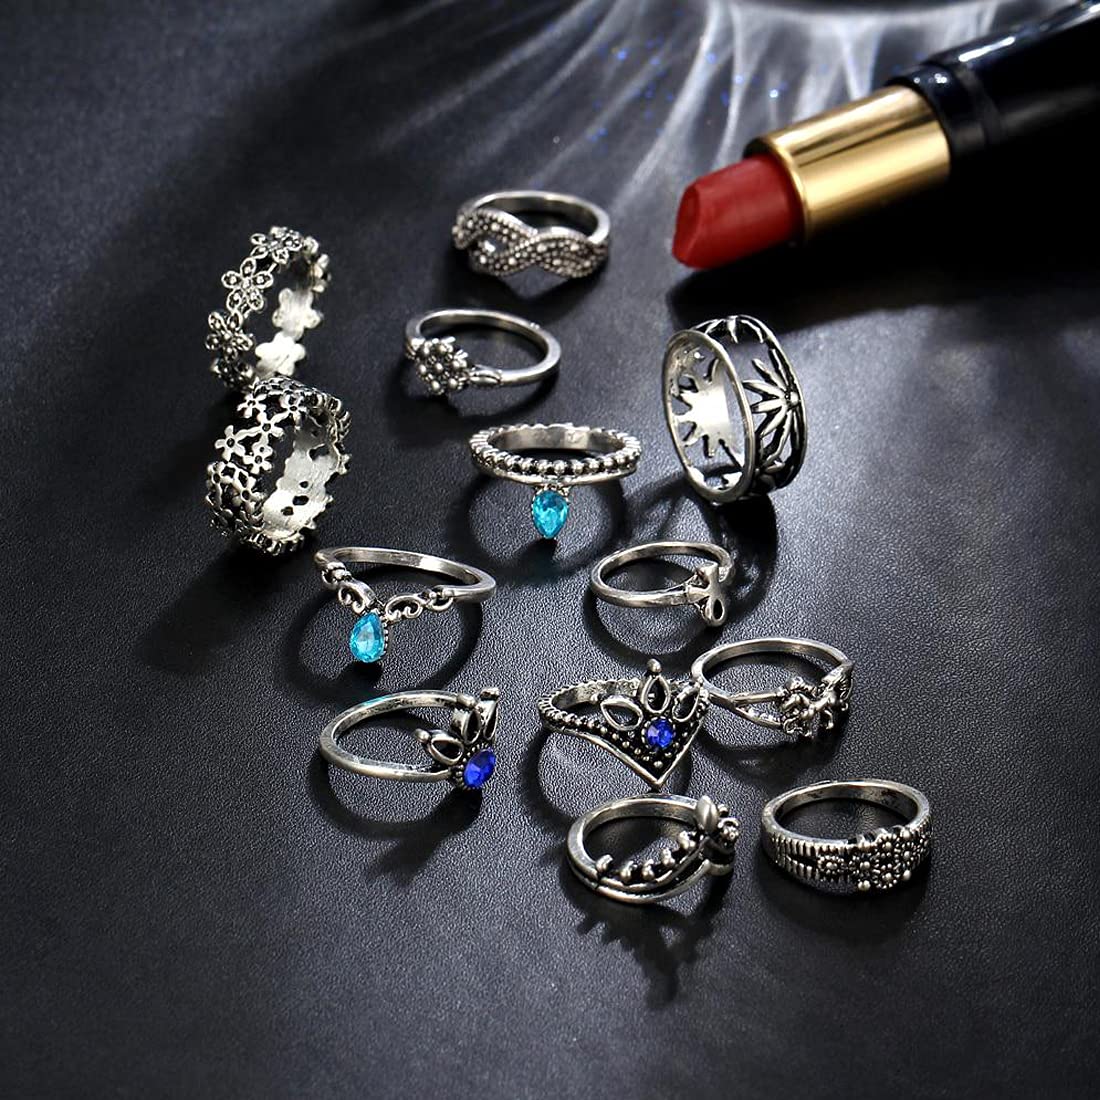 Metal Jewelry Rings Set | Metal Finger Ring | Finger Ring Set | Rings Women  - 8pcs Fashion - Aliexpress